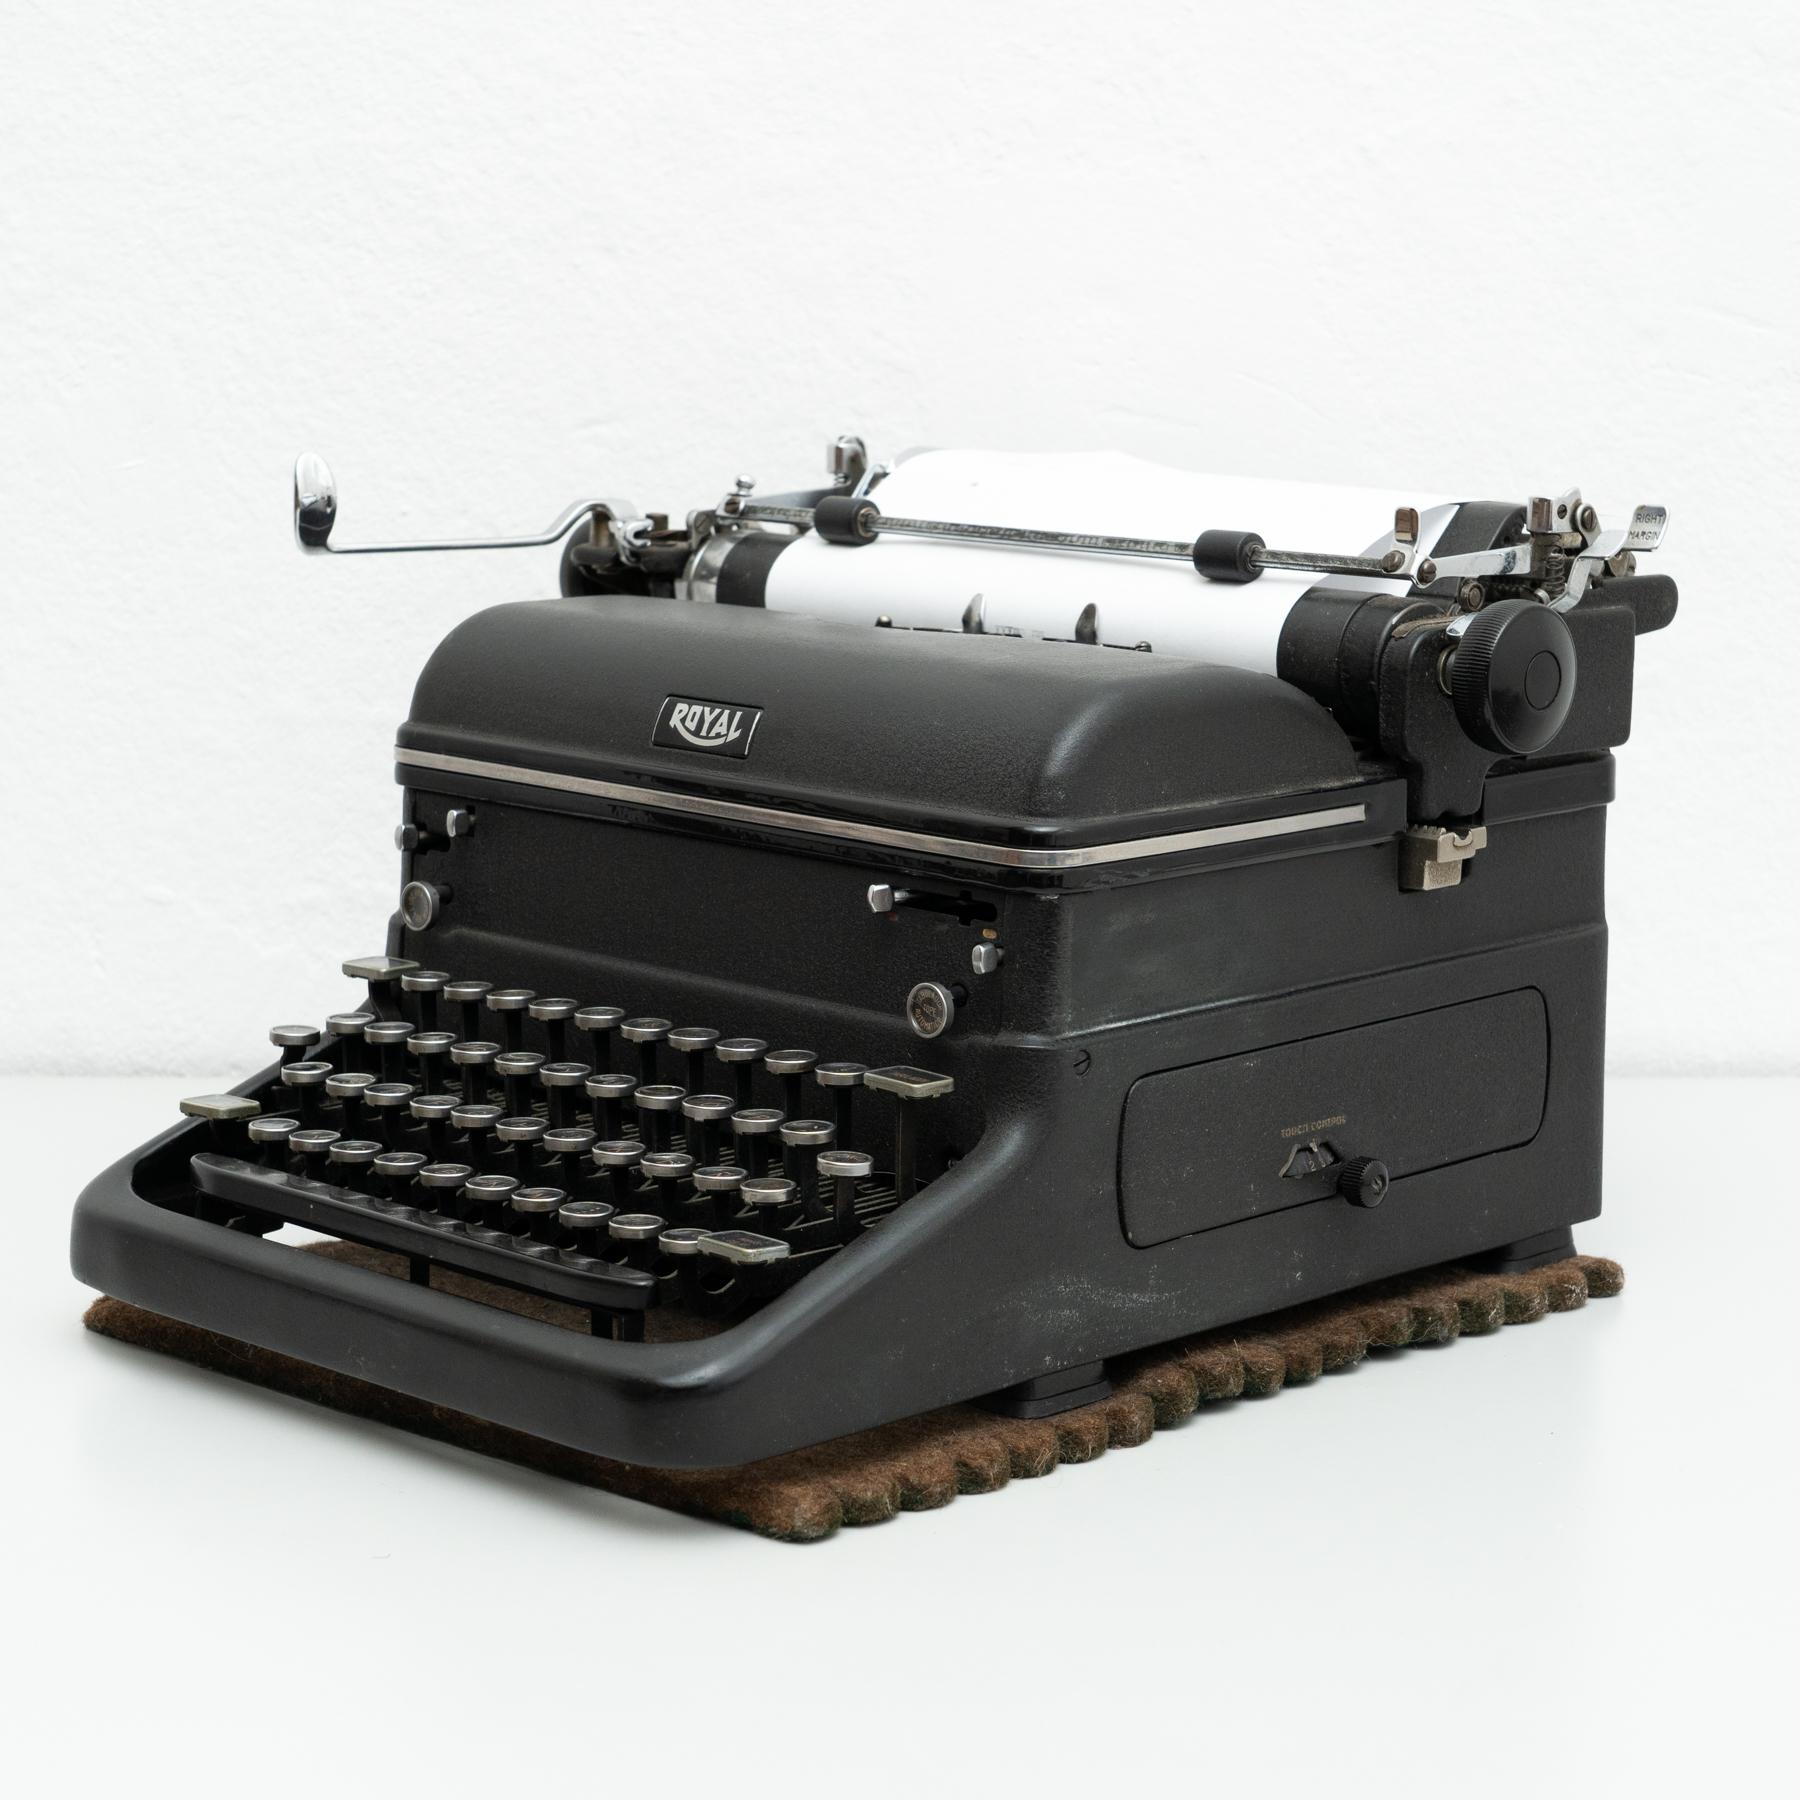 Antique Royal Typewriter Machine, circa 1920 1